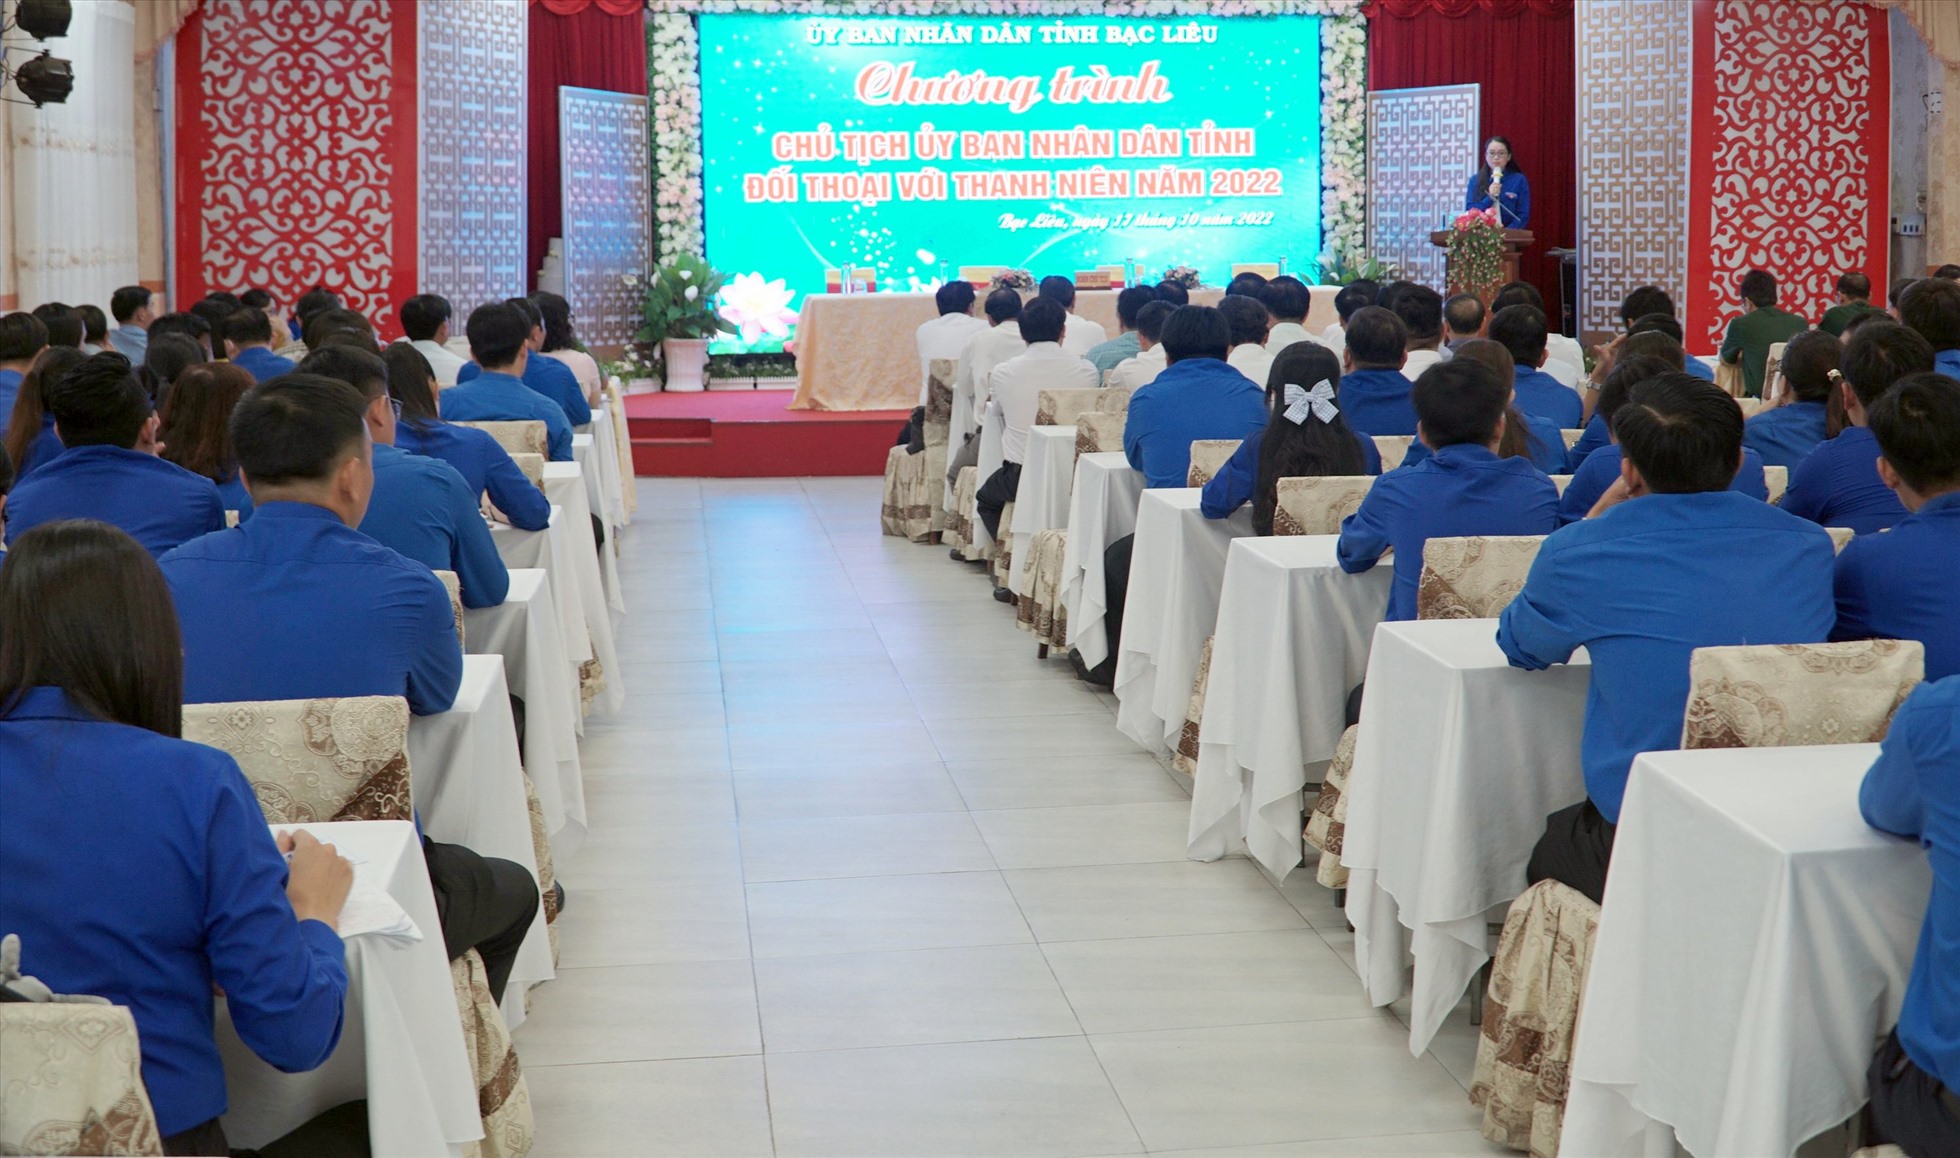 Lần đầu tiên Chủ tịch UBND tỉnh Bạc Liêu tổ chức đối thoại với thanh niên. Ảnh: Nhật Hồ